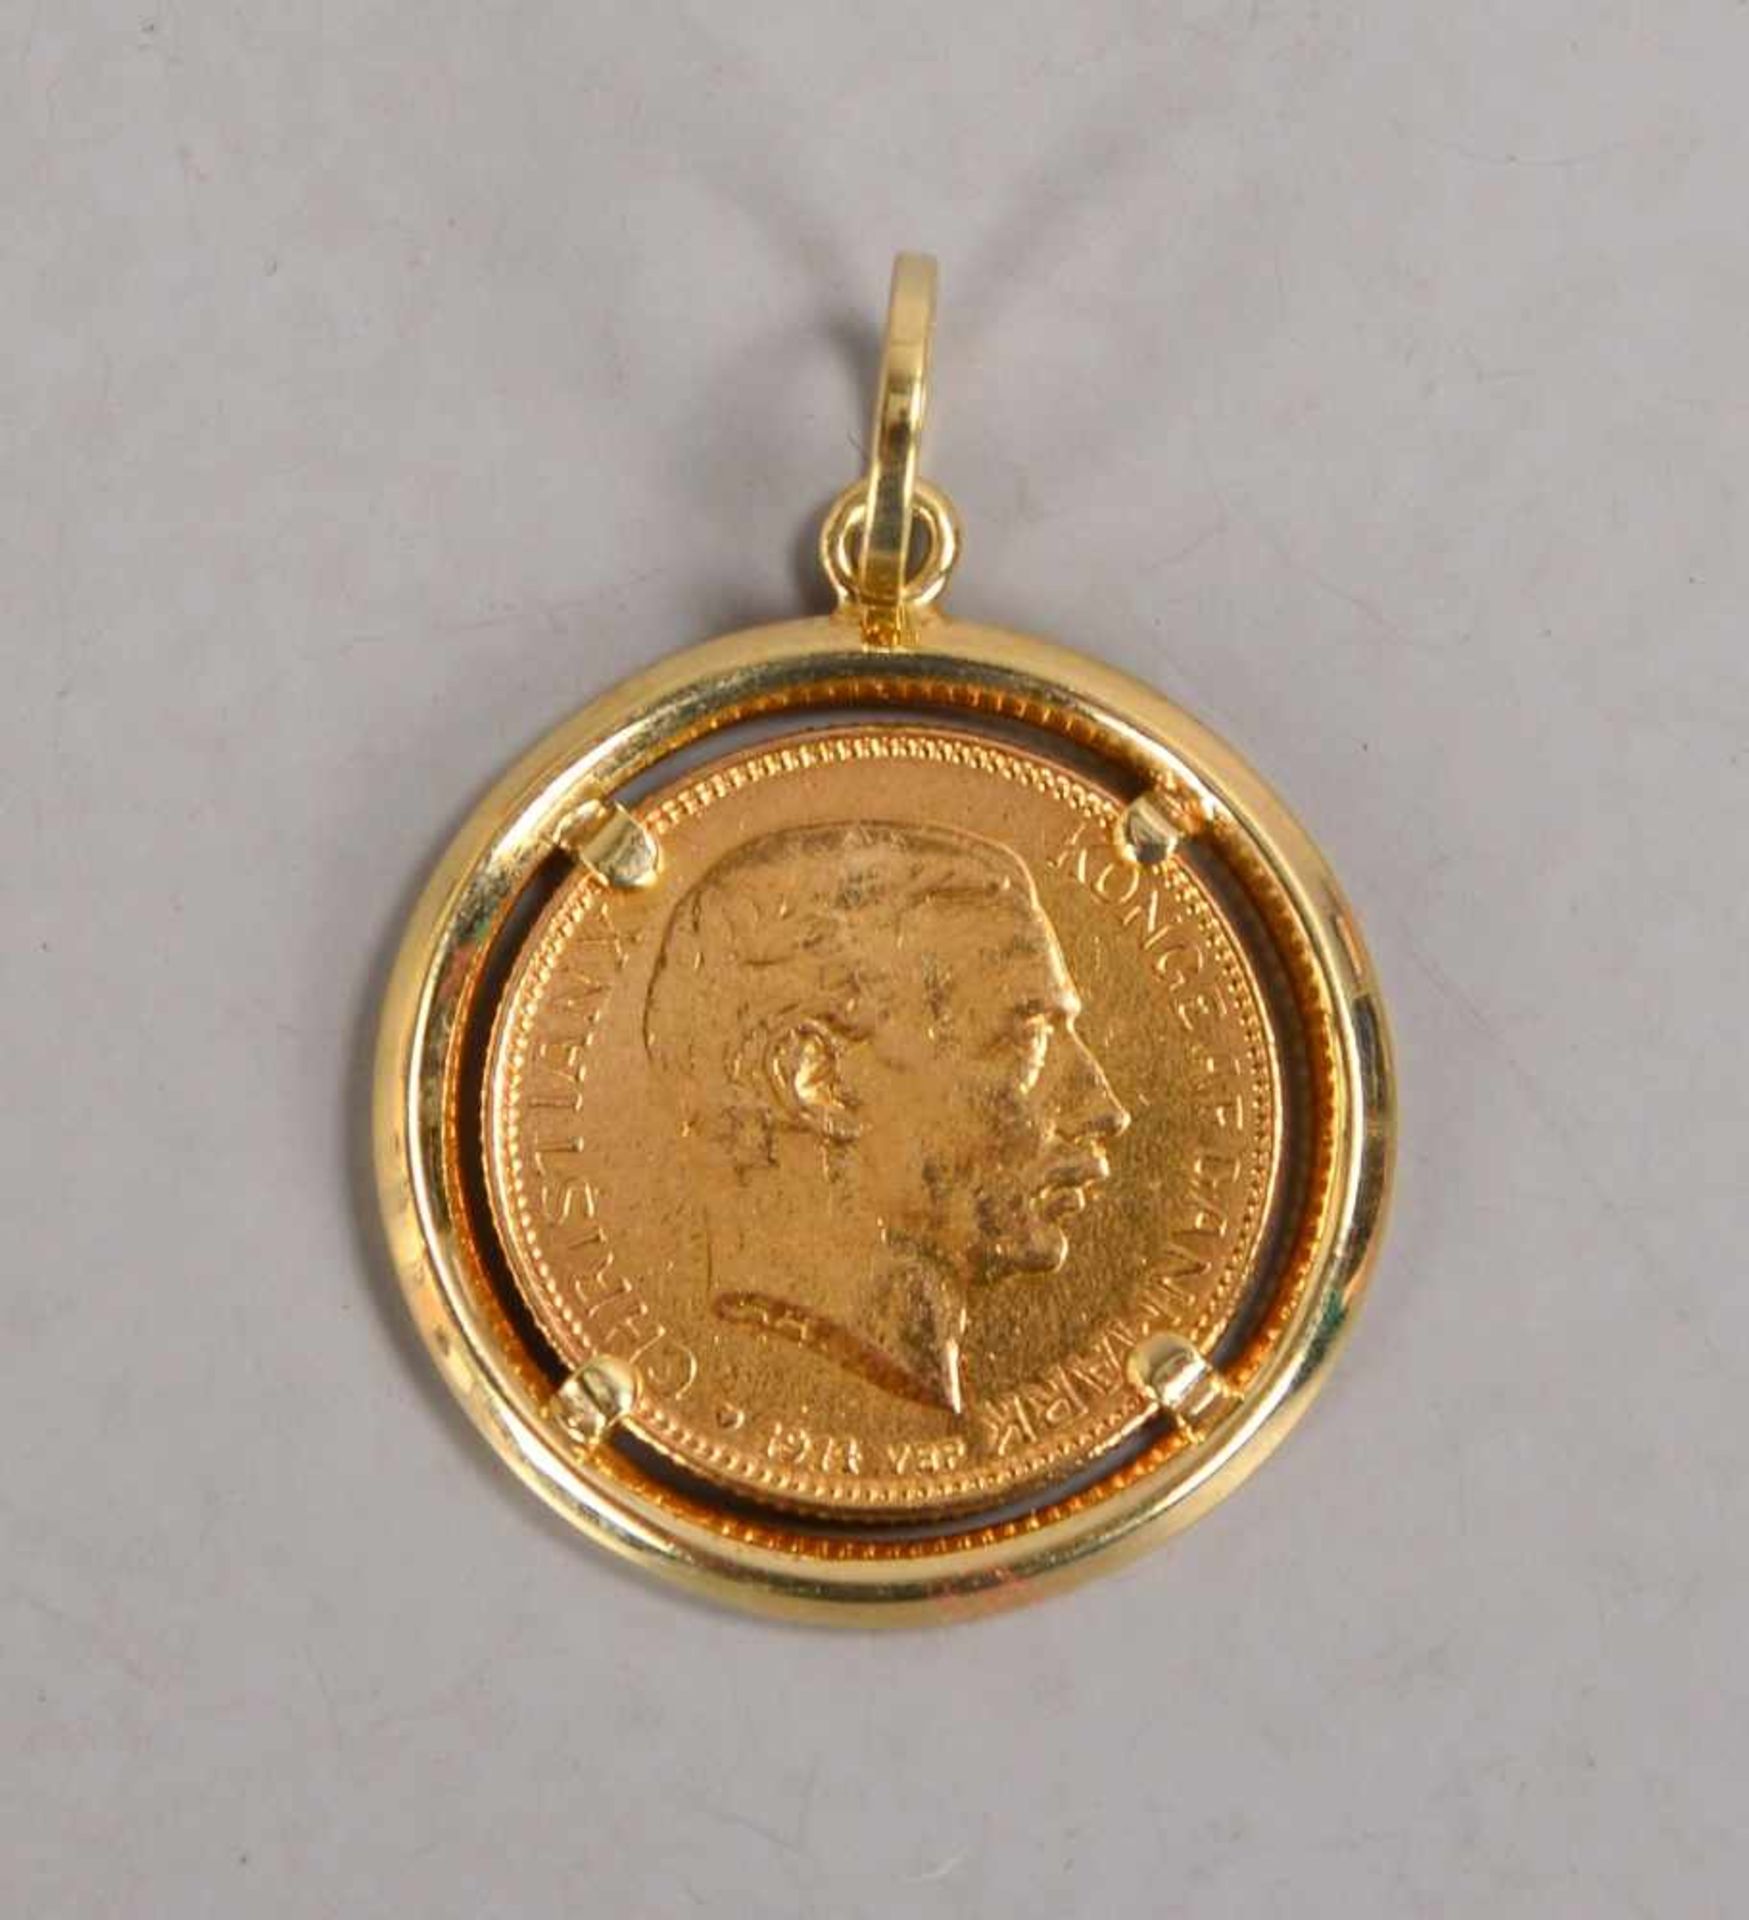 Goldmünze (Dänemark), 900/1.000 Gold, '20 Kronen - 1914 VBP' mit Portrait 'Christian X', Münze mit